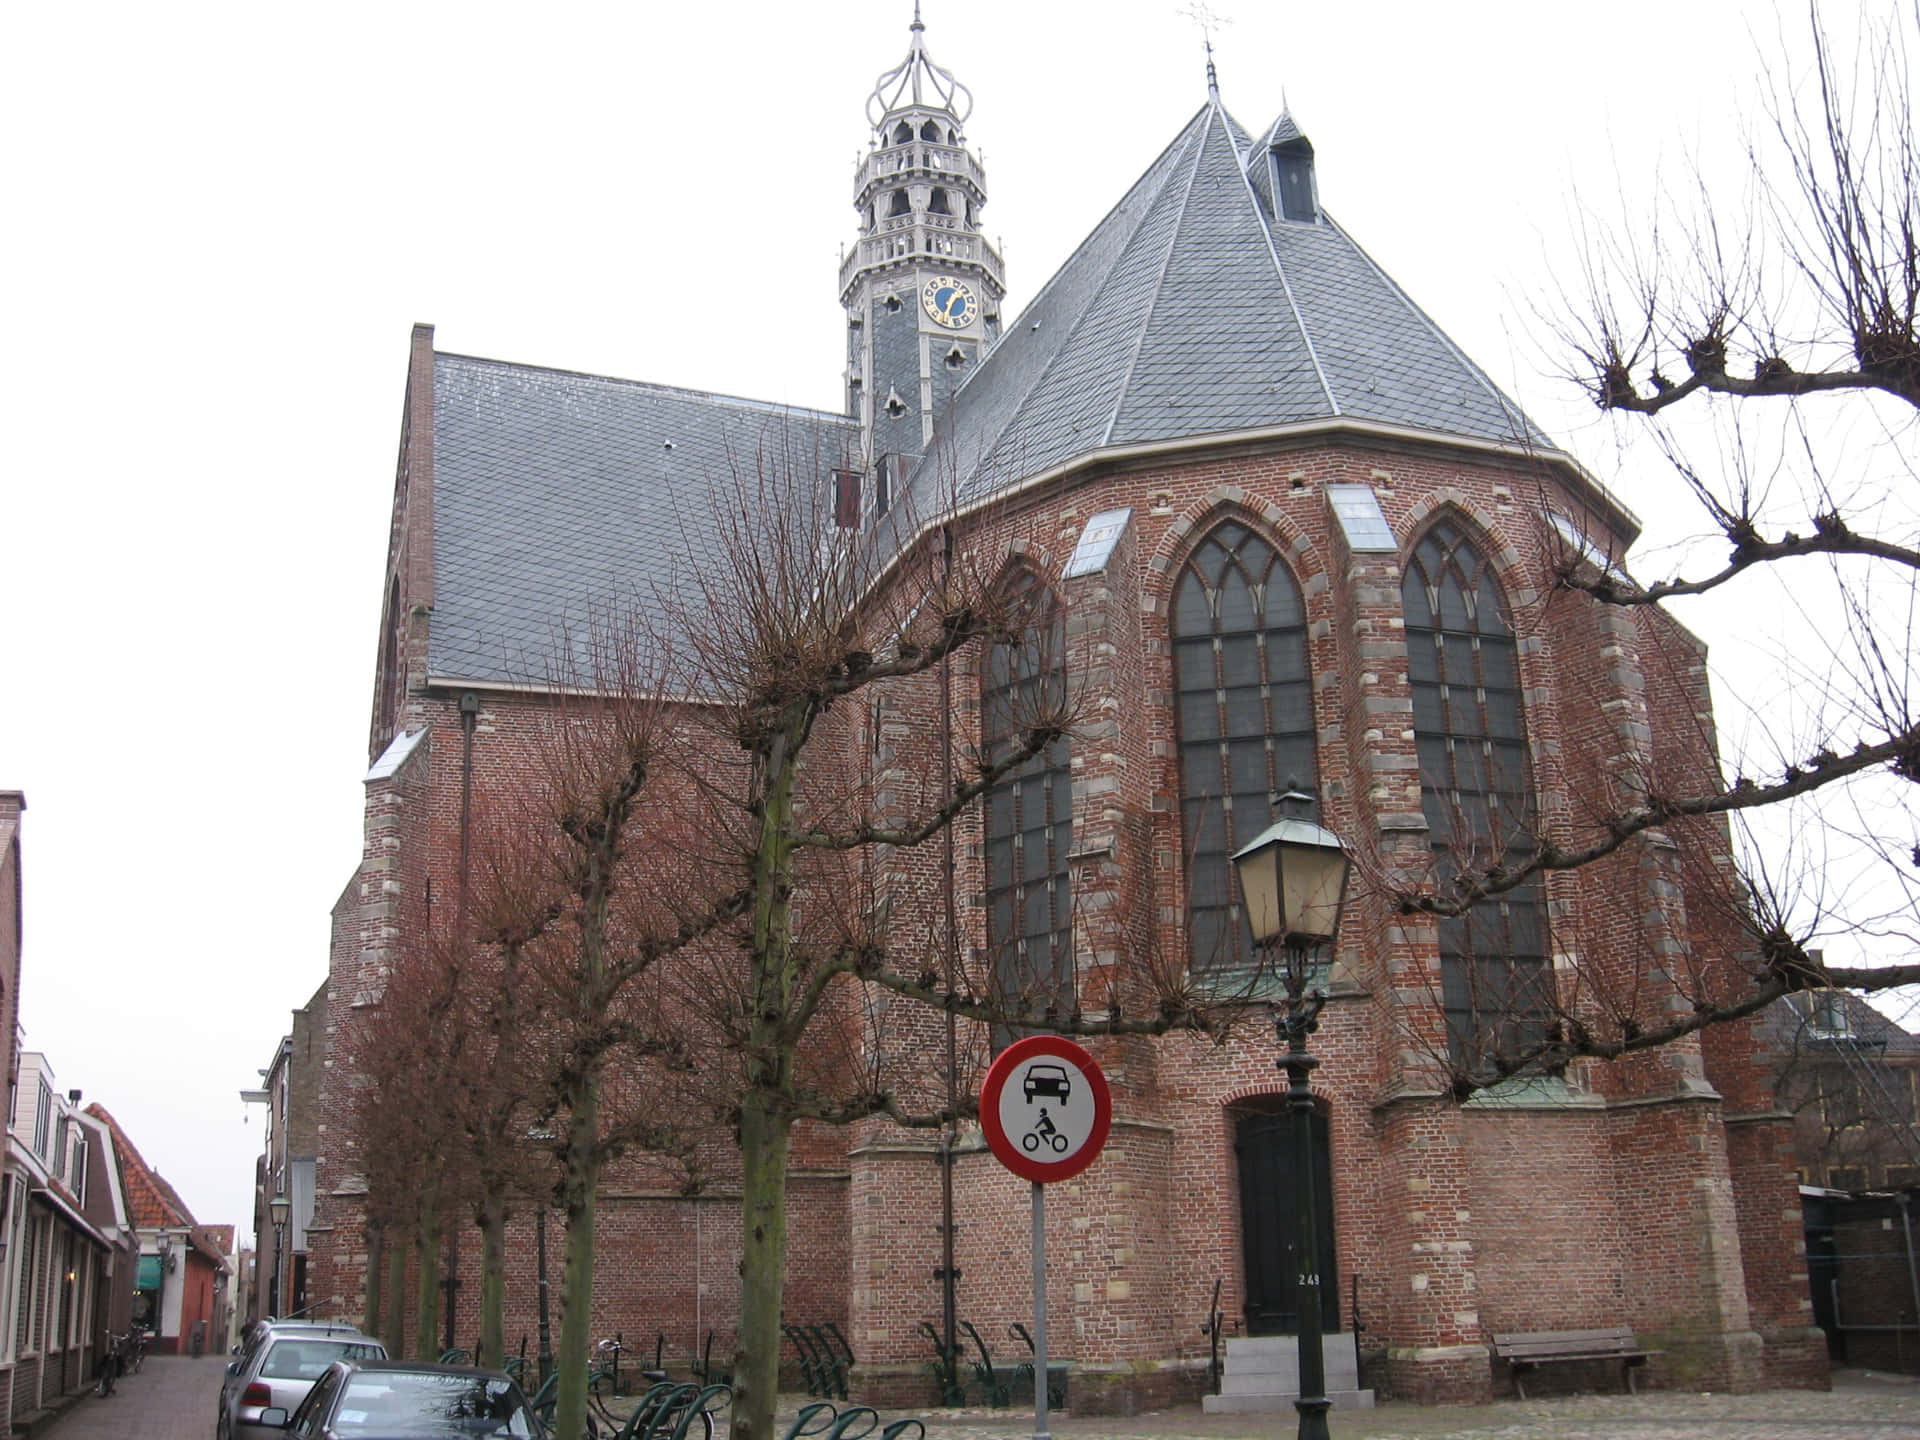 Hoorn Historical Churchand Tower Wallpaper